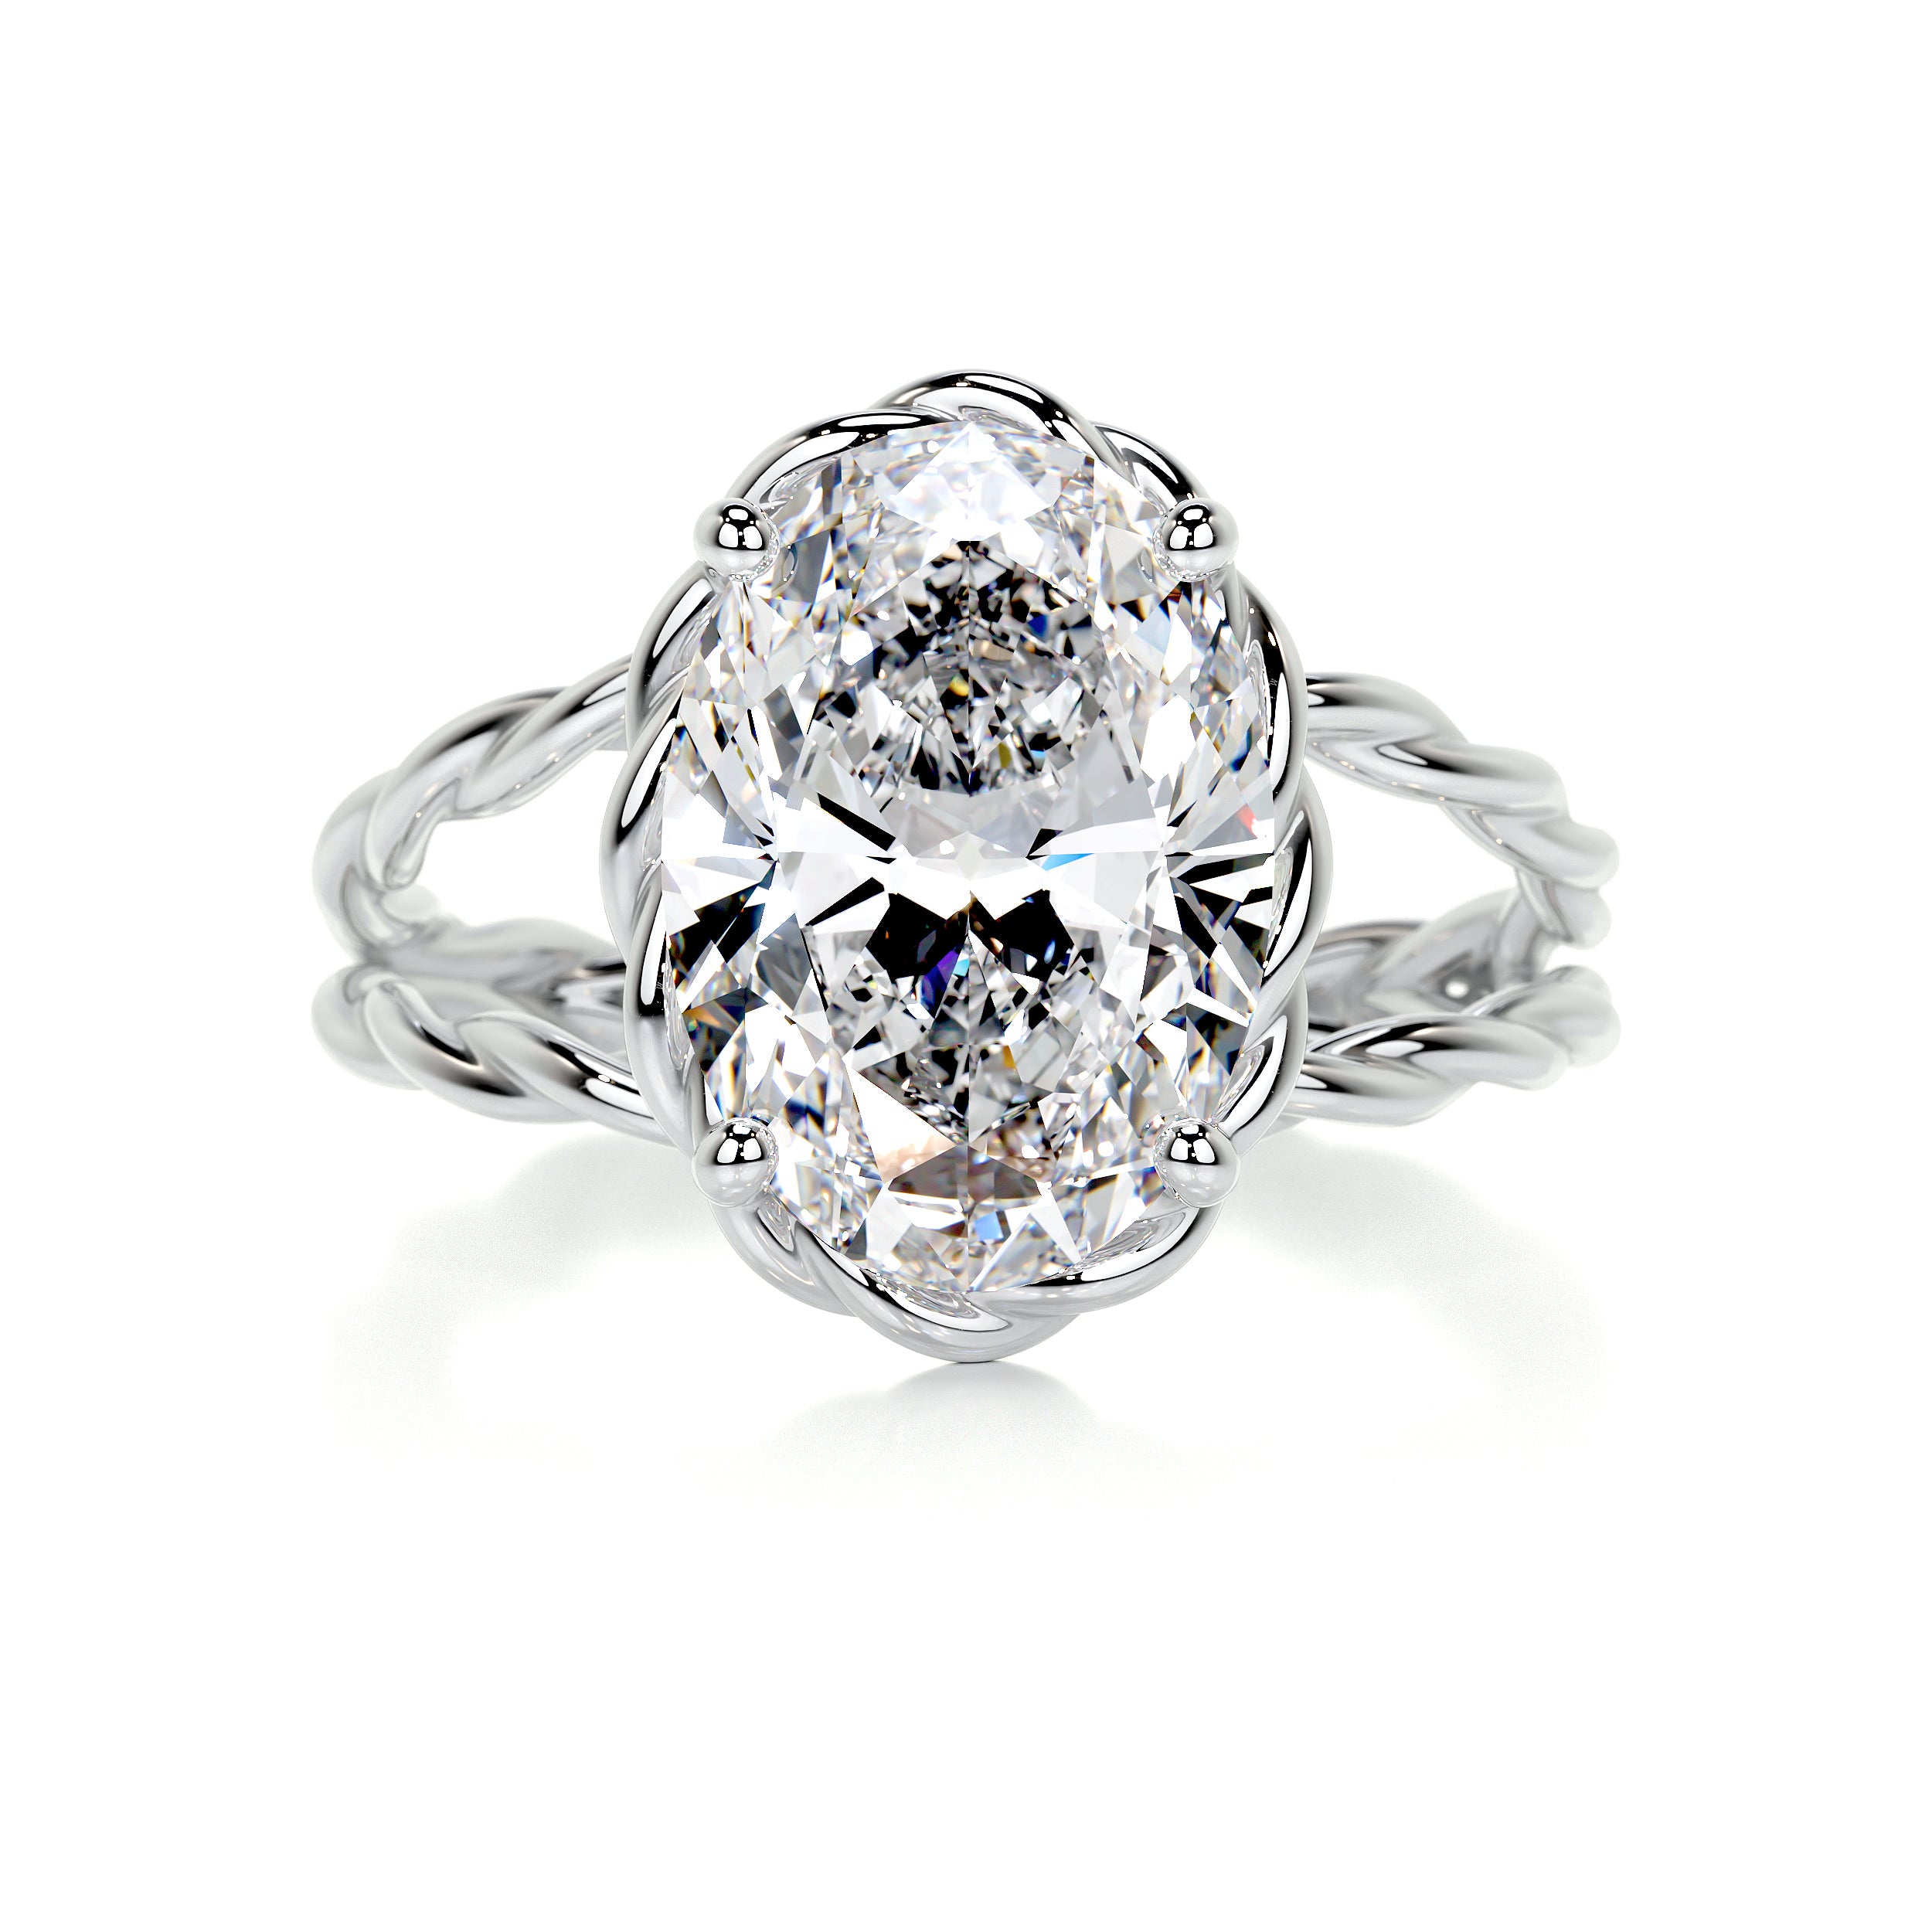 Milani Diamond Engagement Ring -14K White Gold